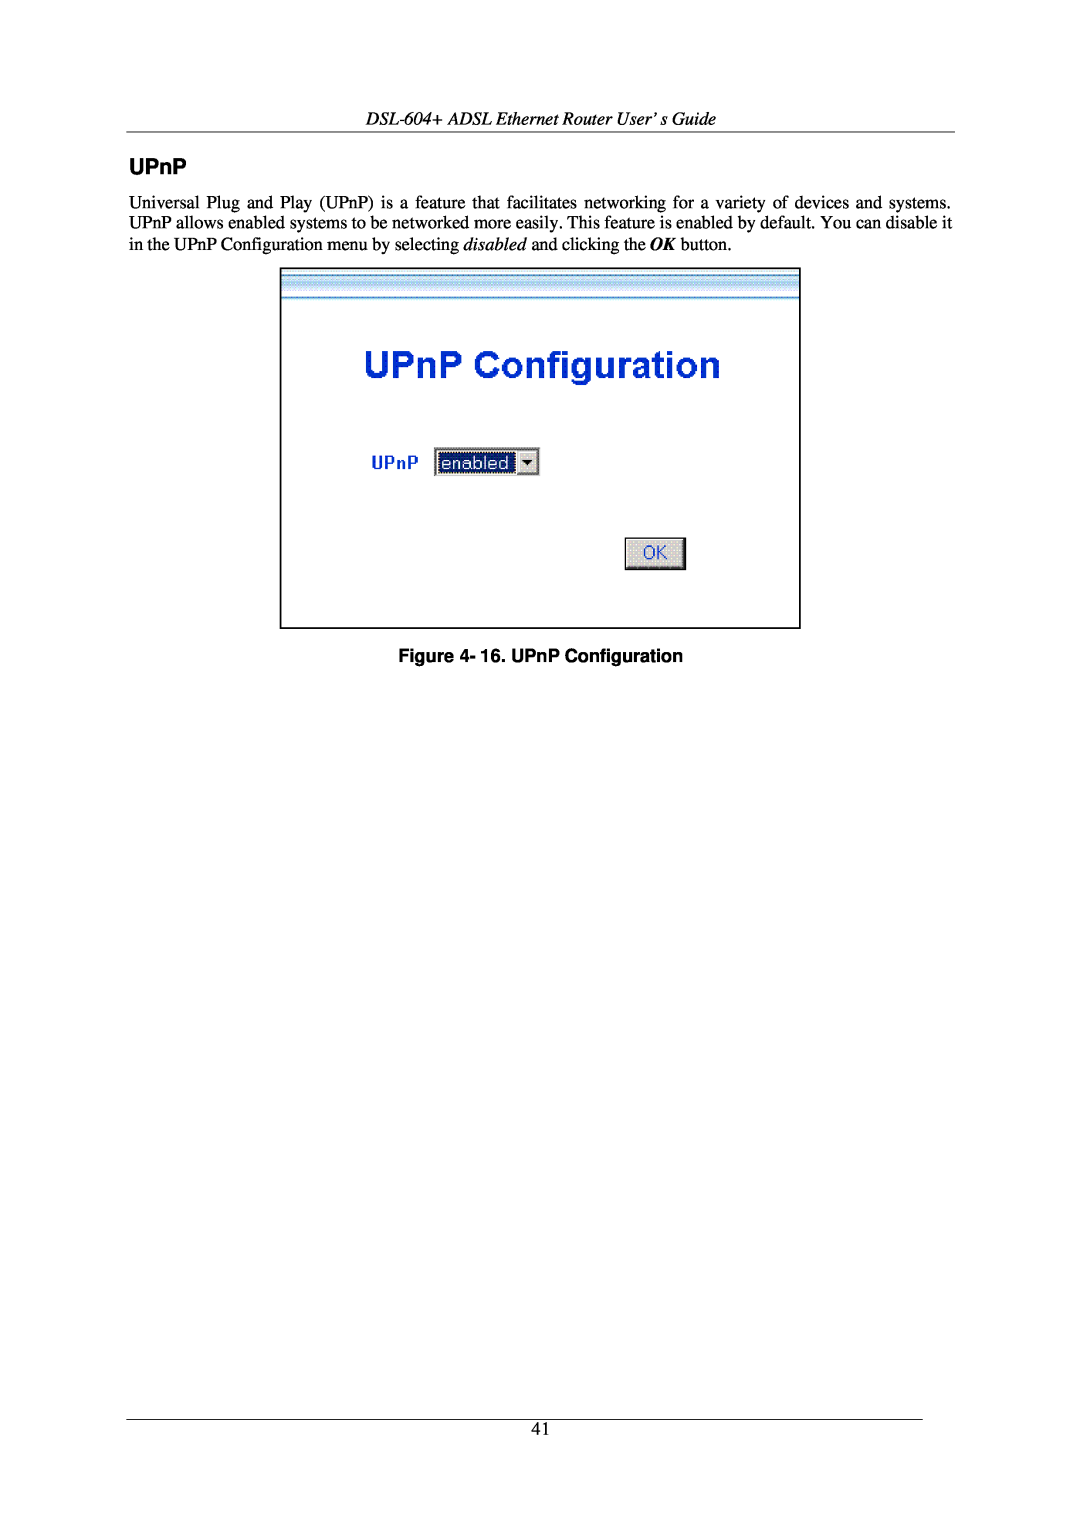 D-Link manual DSL-604+ ADSL Ethernet Router User’s Guide, 16. UPnP Configuration 